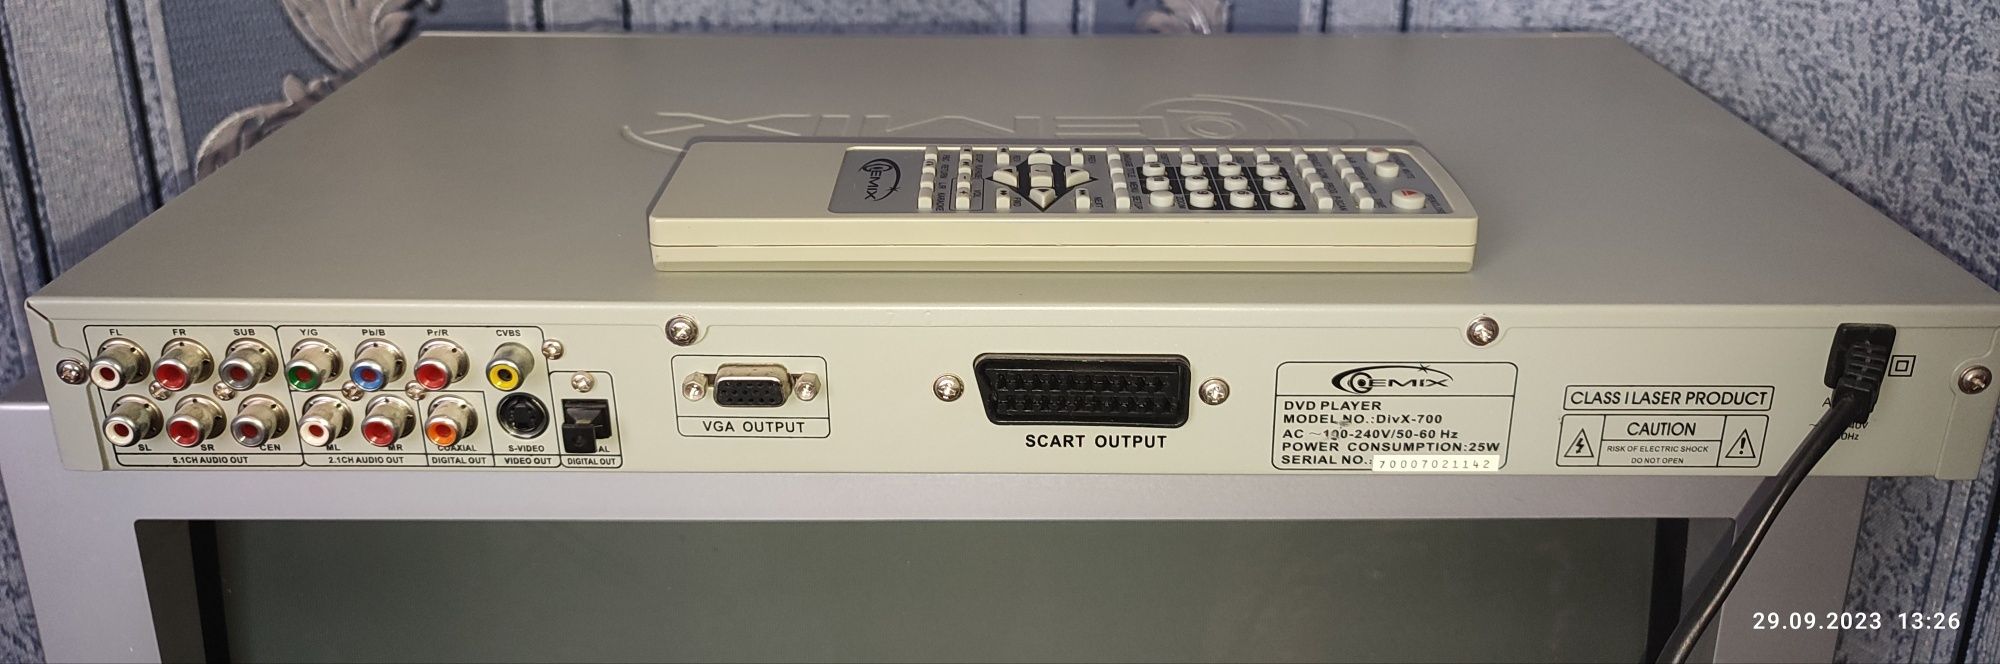 Gemix відеопрогравач модель: Divx-700